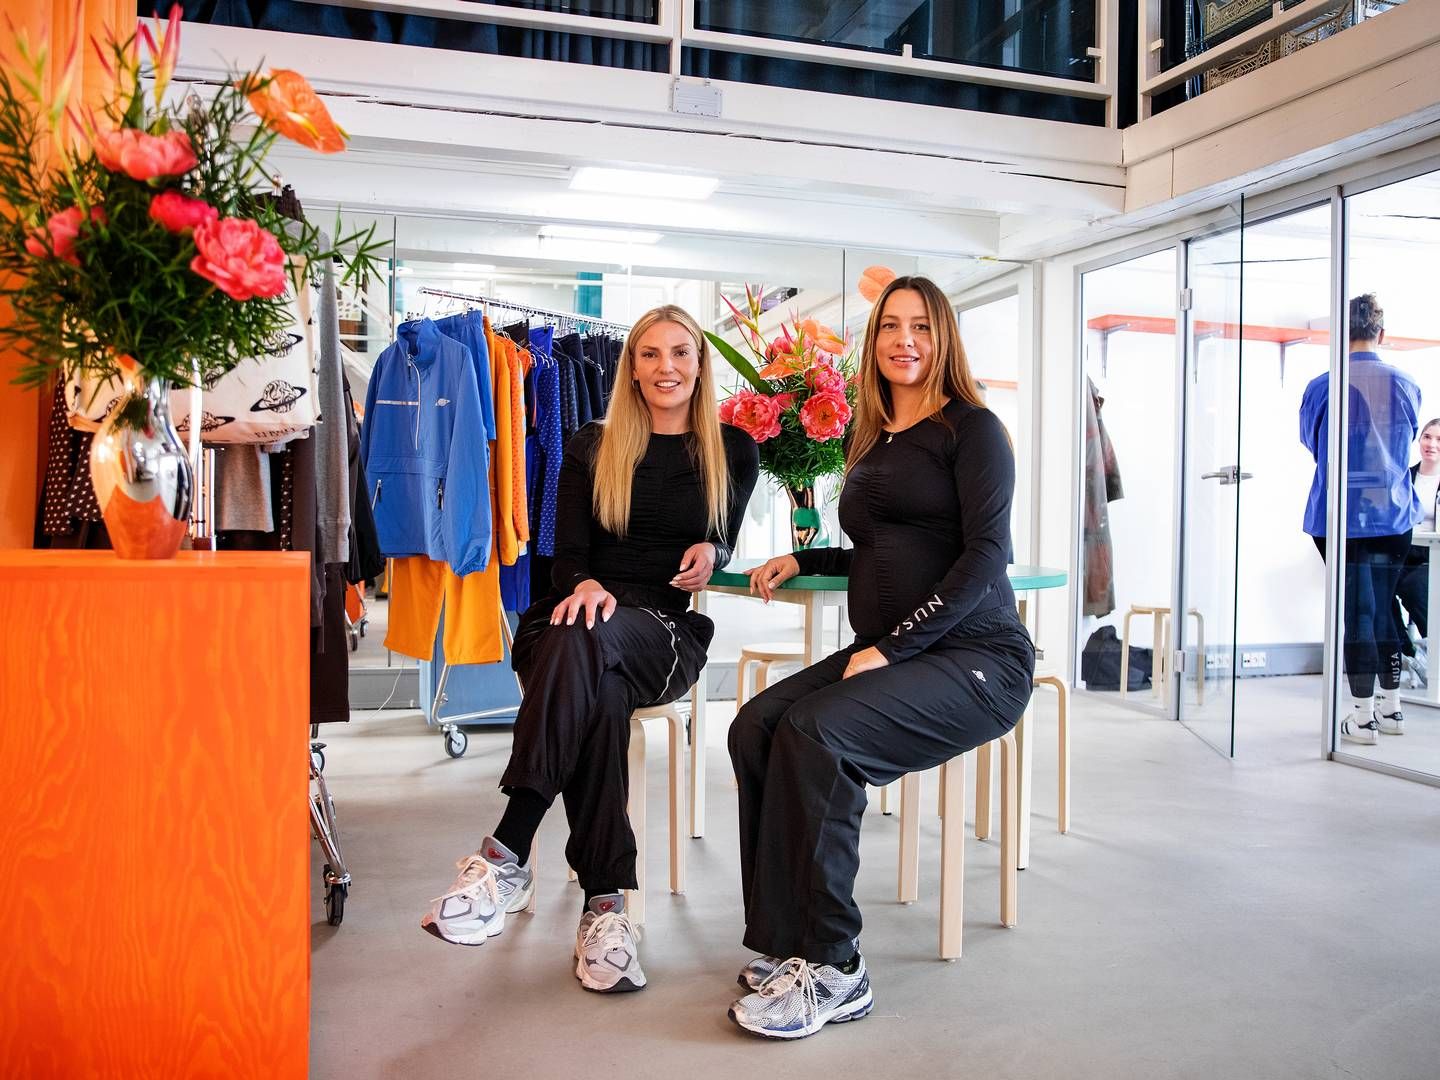 Mille Skat og Kristine Esmer stiftede Planet Nusa i 2018, men den første kollektion blev først lanceret i 2019. Siden da er det gået stærkt. | Foto: Finn Frandsen